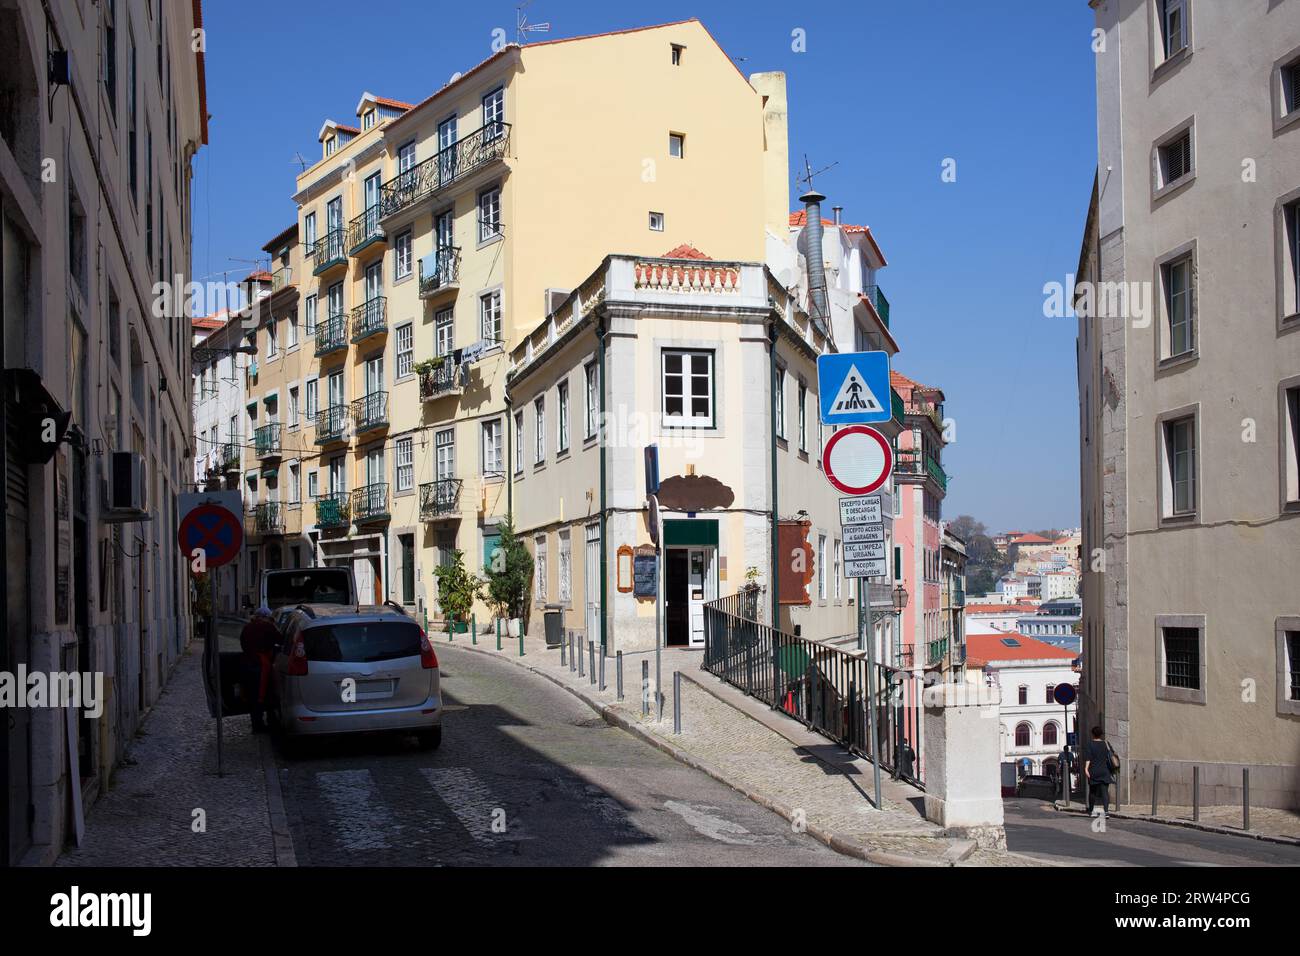 Case pittoresche nel quartiere di Bairro alto a Lisbona, Portogallo Foto Stock